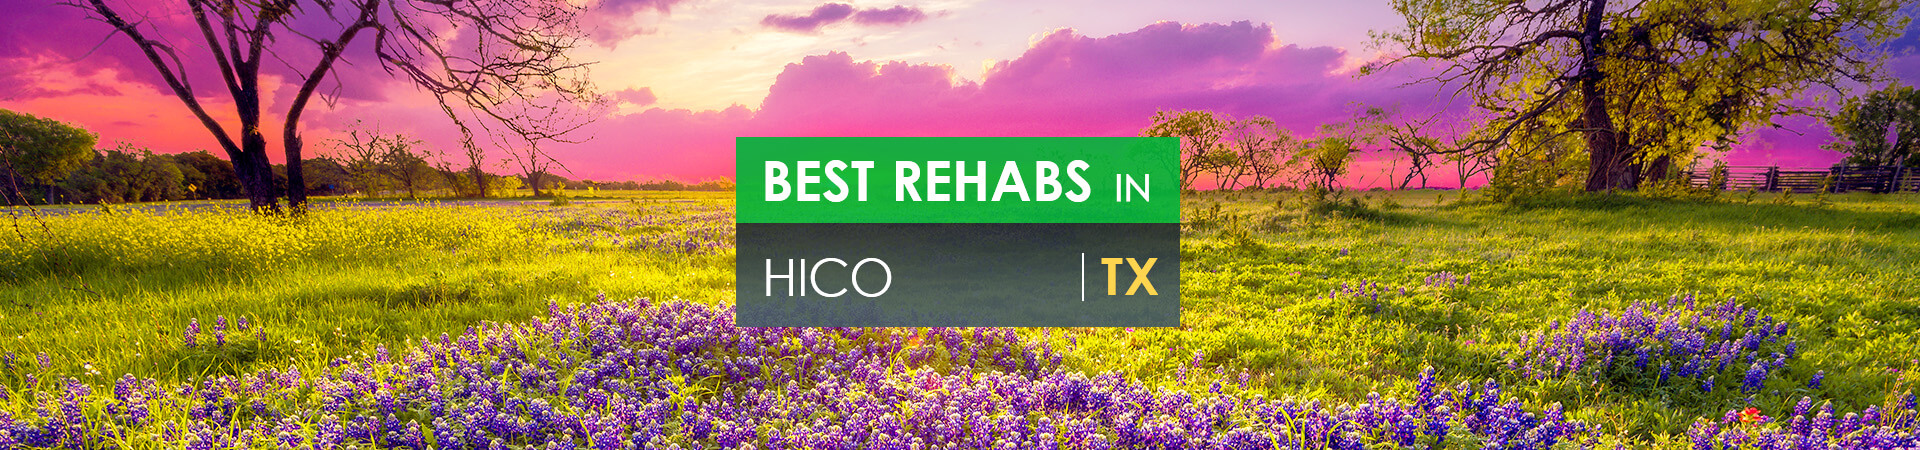 Best rehabs in Hico, TX